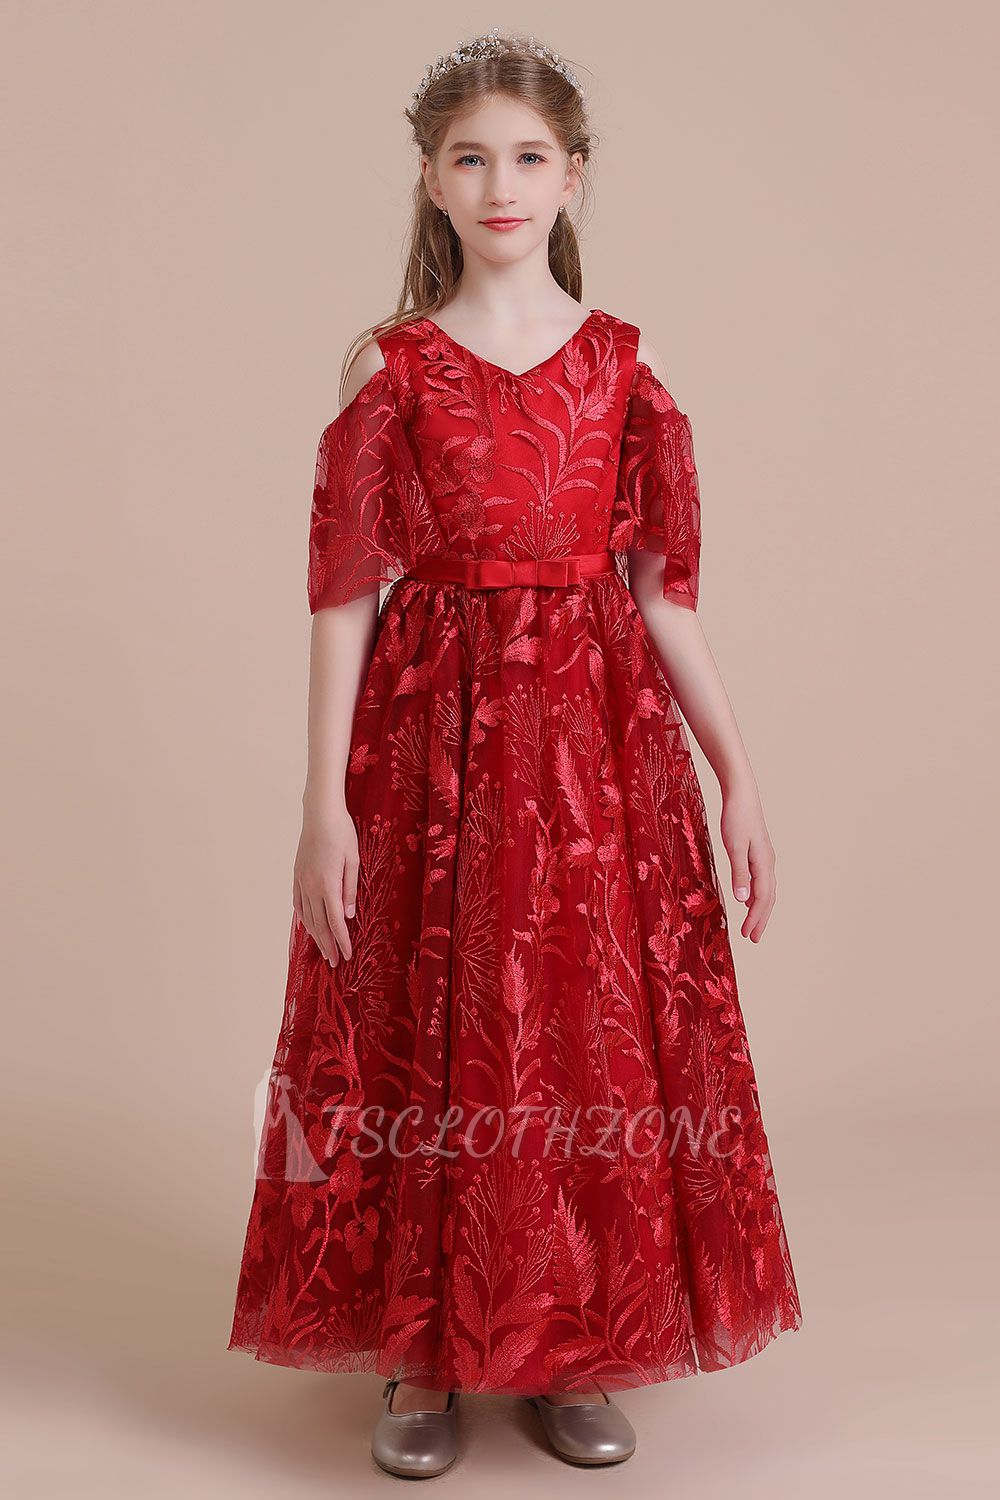 Simple A-line Cold-shoulder Flower Girl Dress | V-neck Tulle Little Girls Dress for Wedding